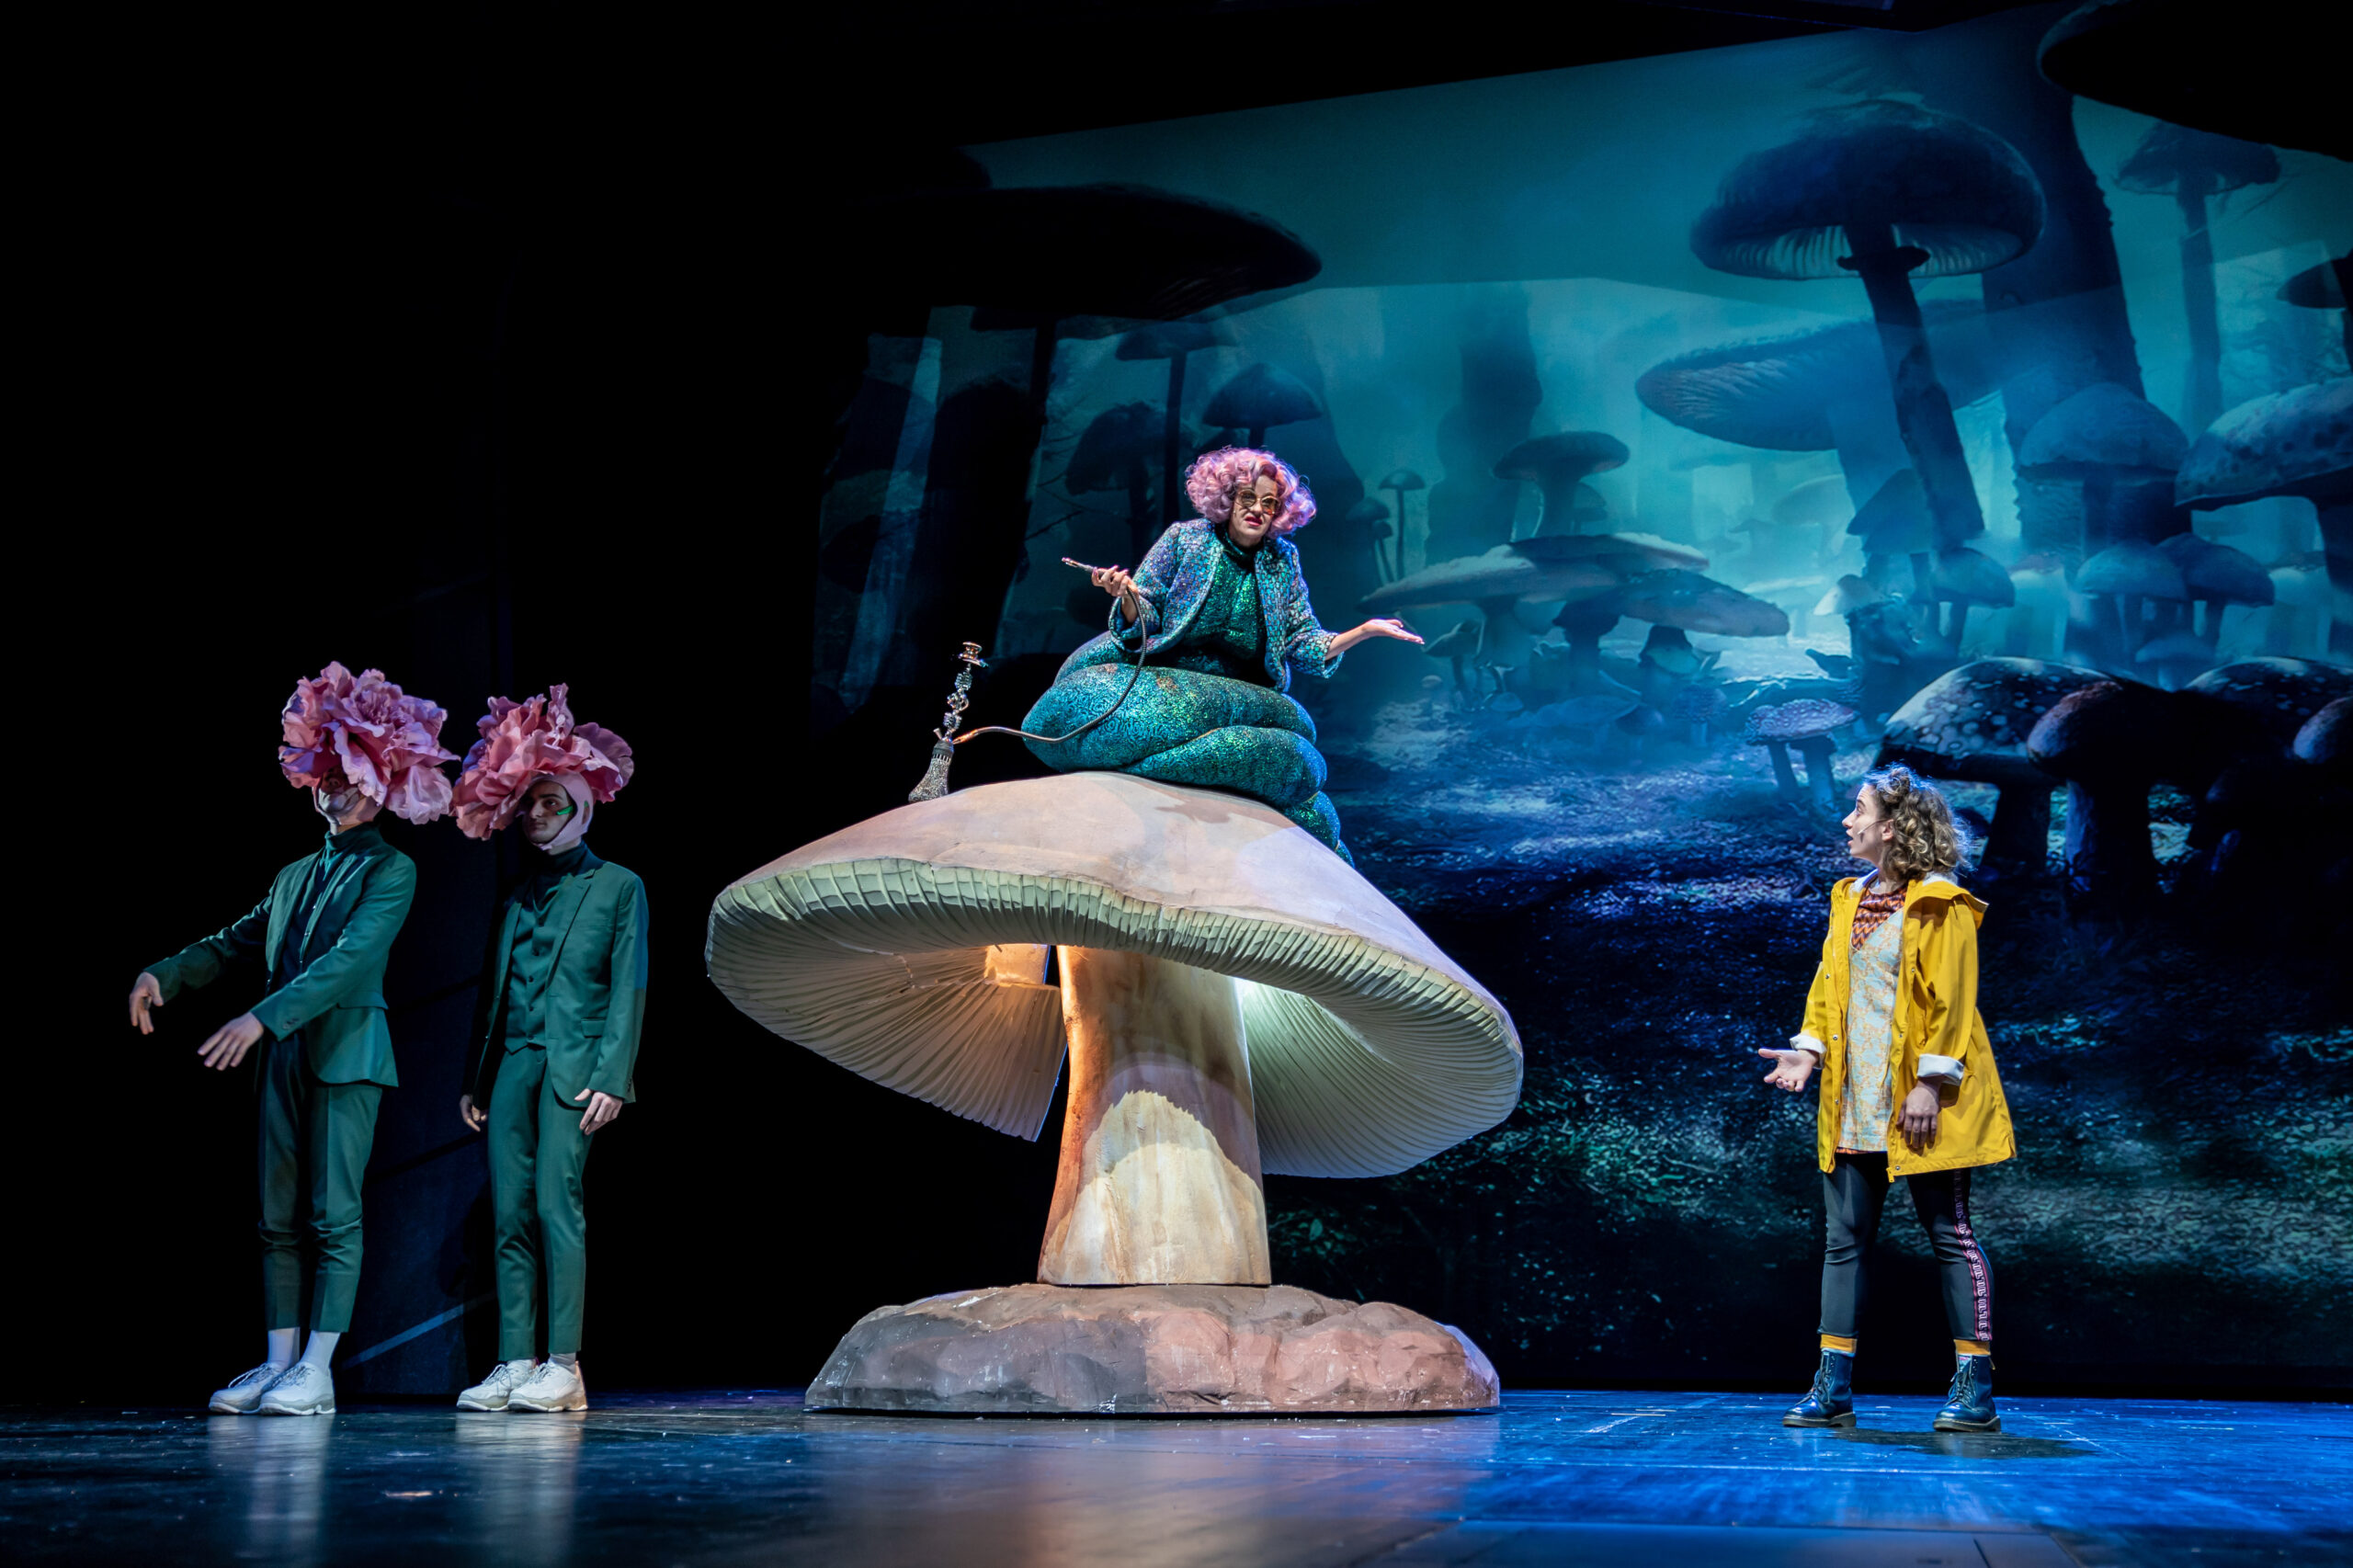 Dunkle Bühne, links stehen Tweedledum & Tweedledee, in der Mitte sitzt die Raume auf einem riesigen Pilz, rechts Alice